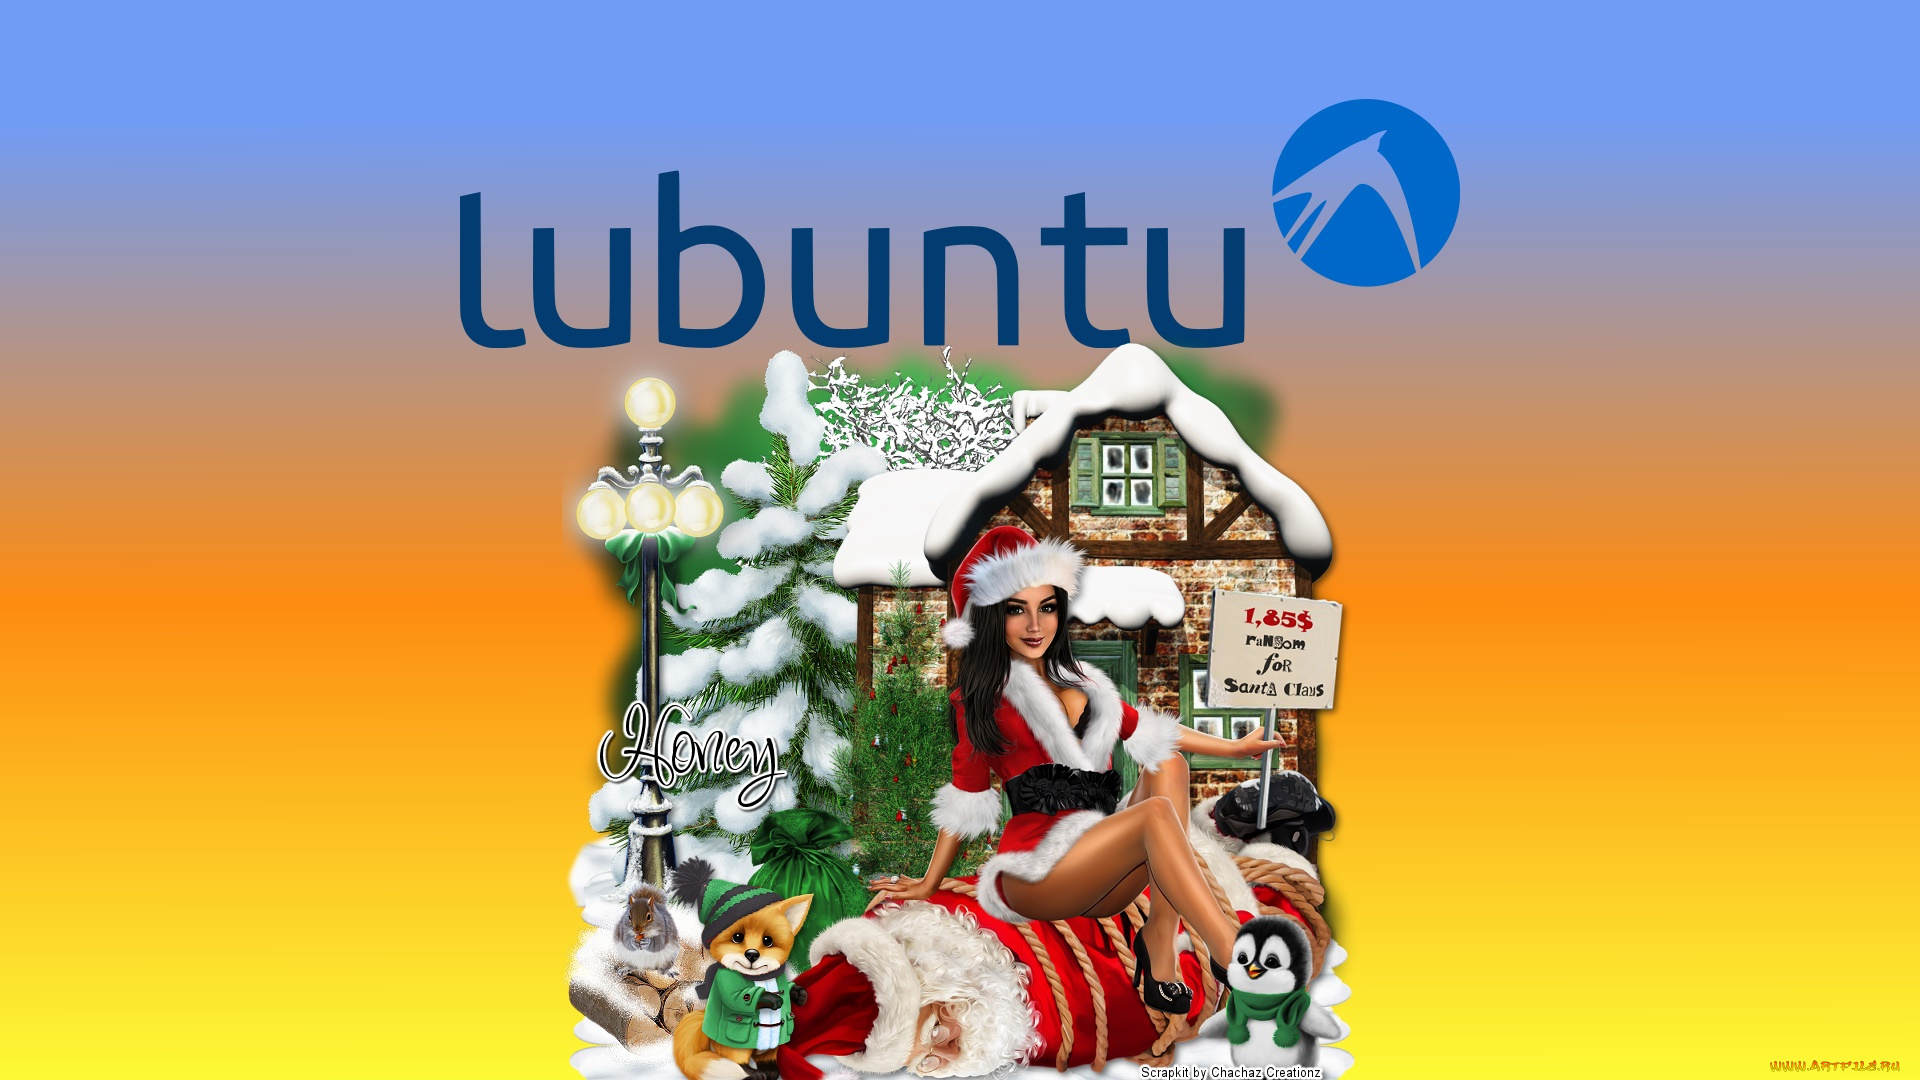 компьютеры, ubuntu, linux, девушка, взгляд, фон, логотип